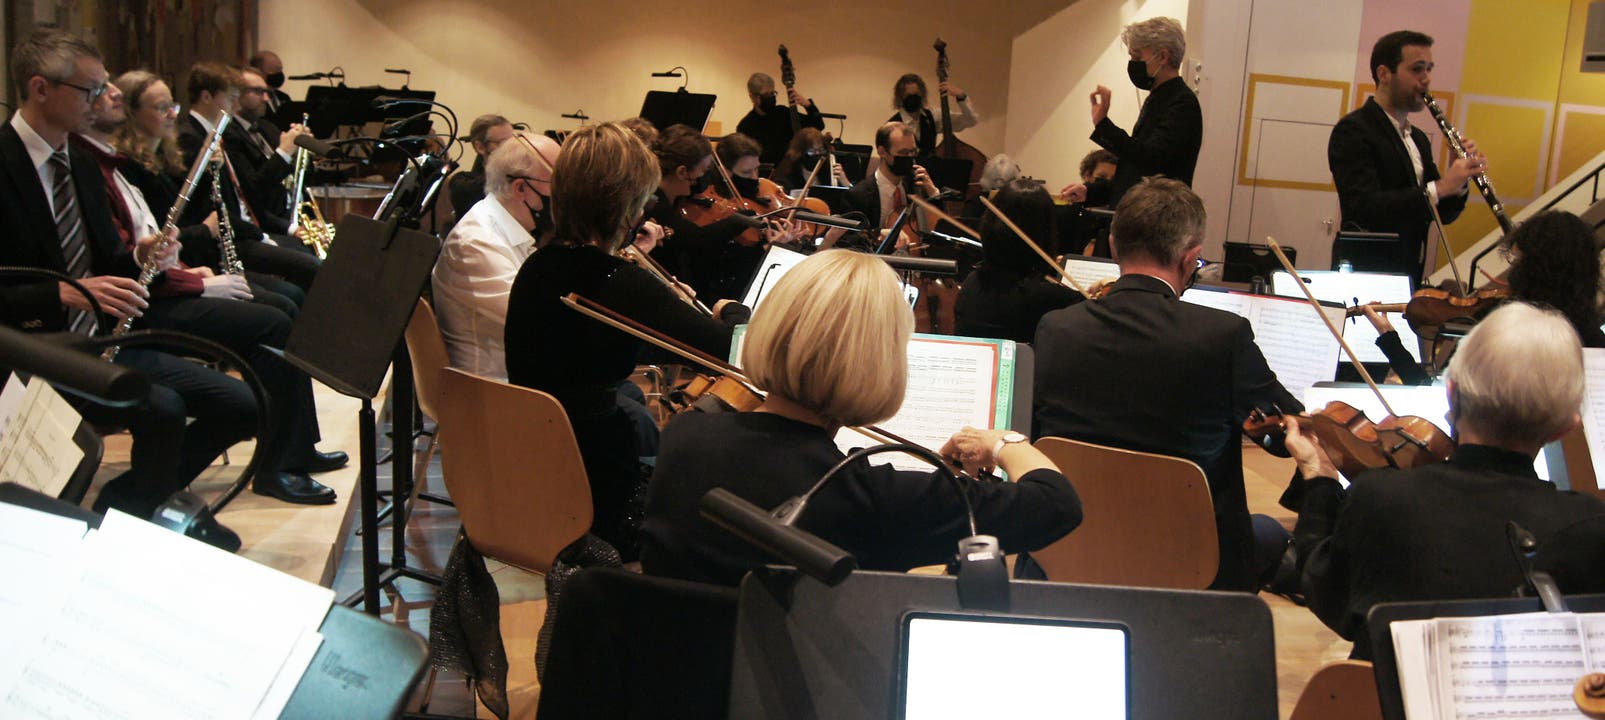 Das Collegium Musicum Urdorf trat auf mit Dirigent Pascal Druey und dem Solisten Sérgio Pires.